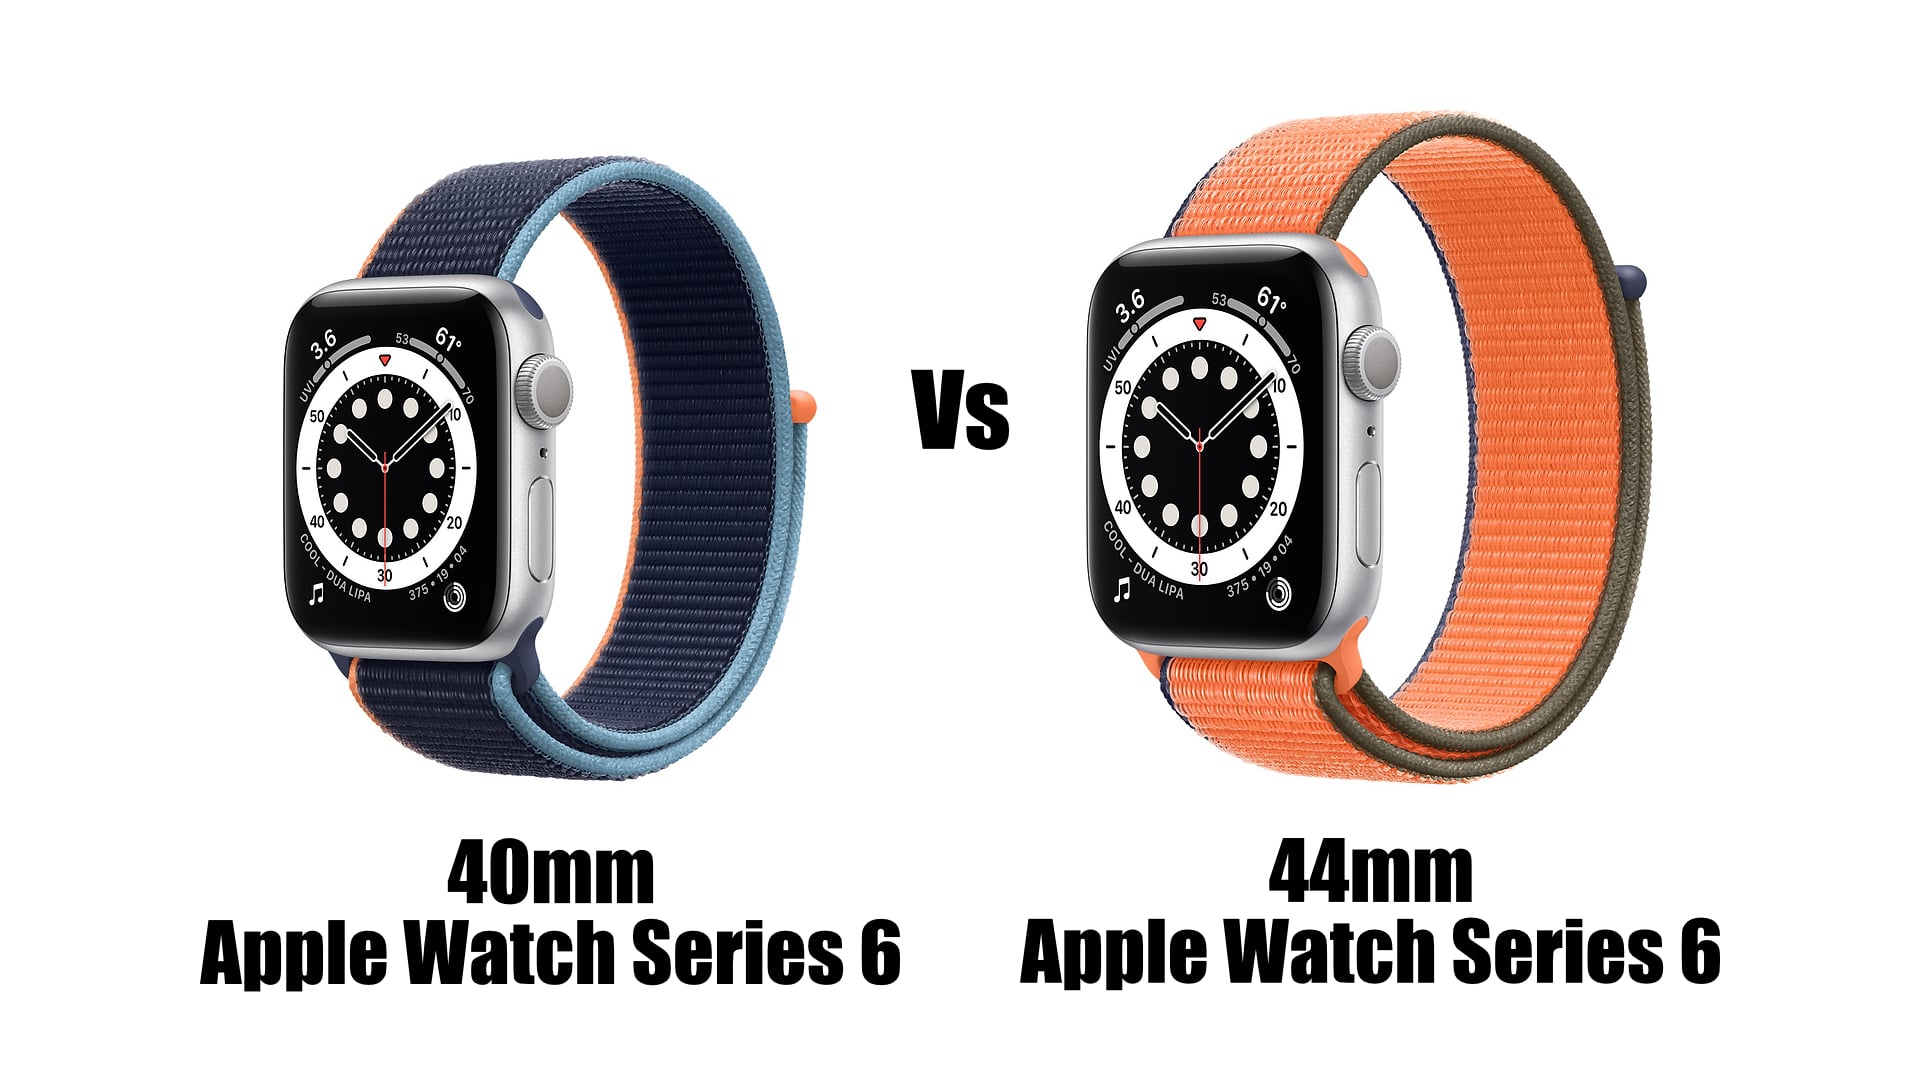 40mm Apple Watch Series 6 vs 44mm Apple Watch Series 6